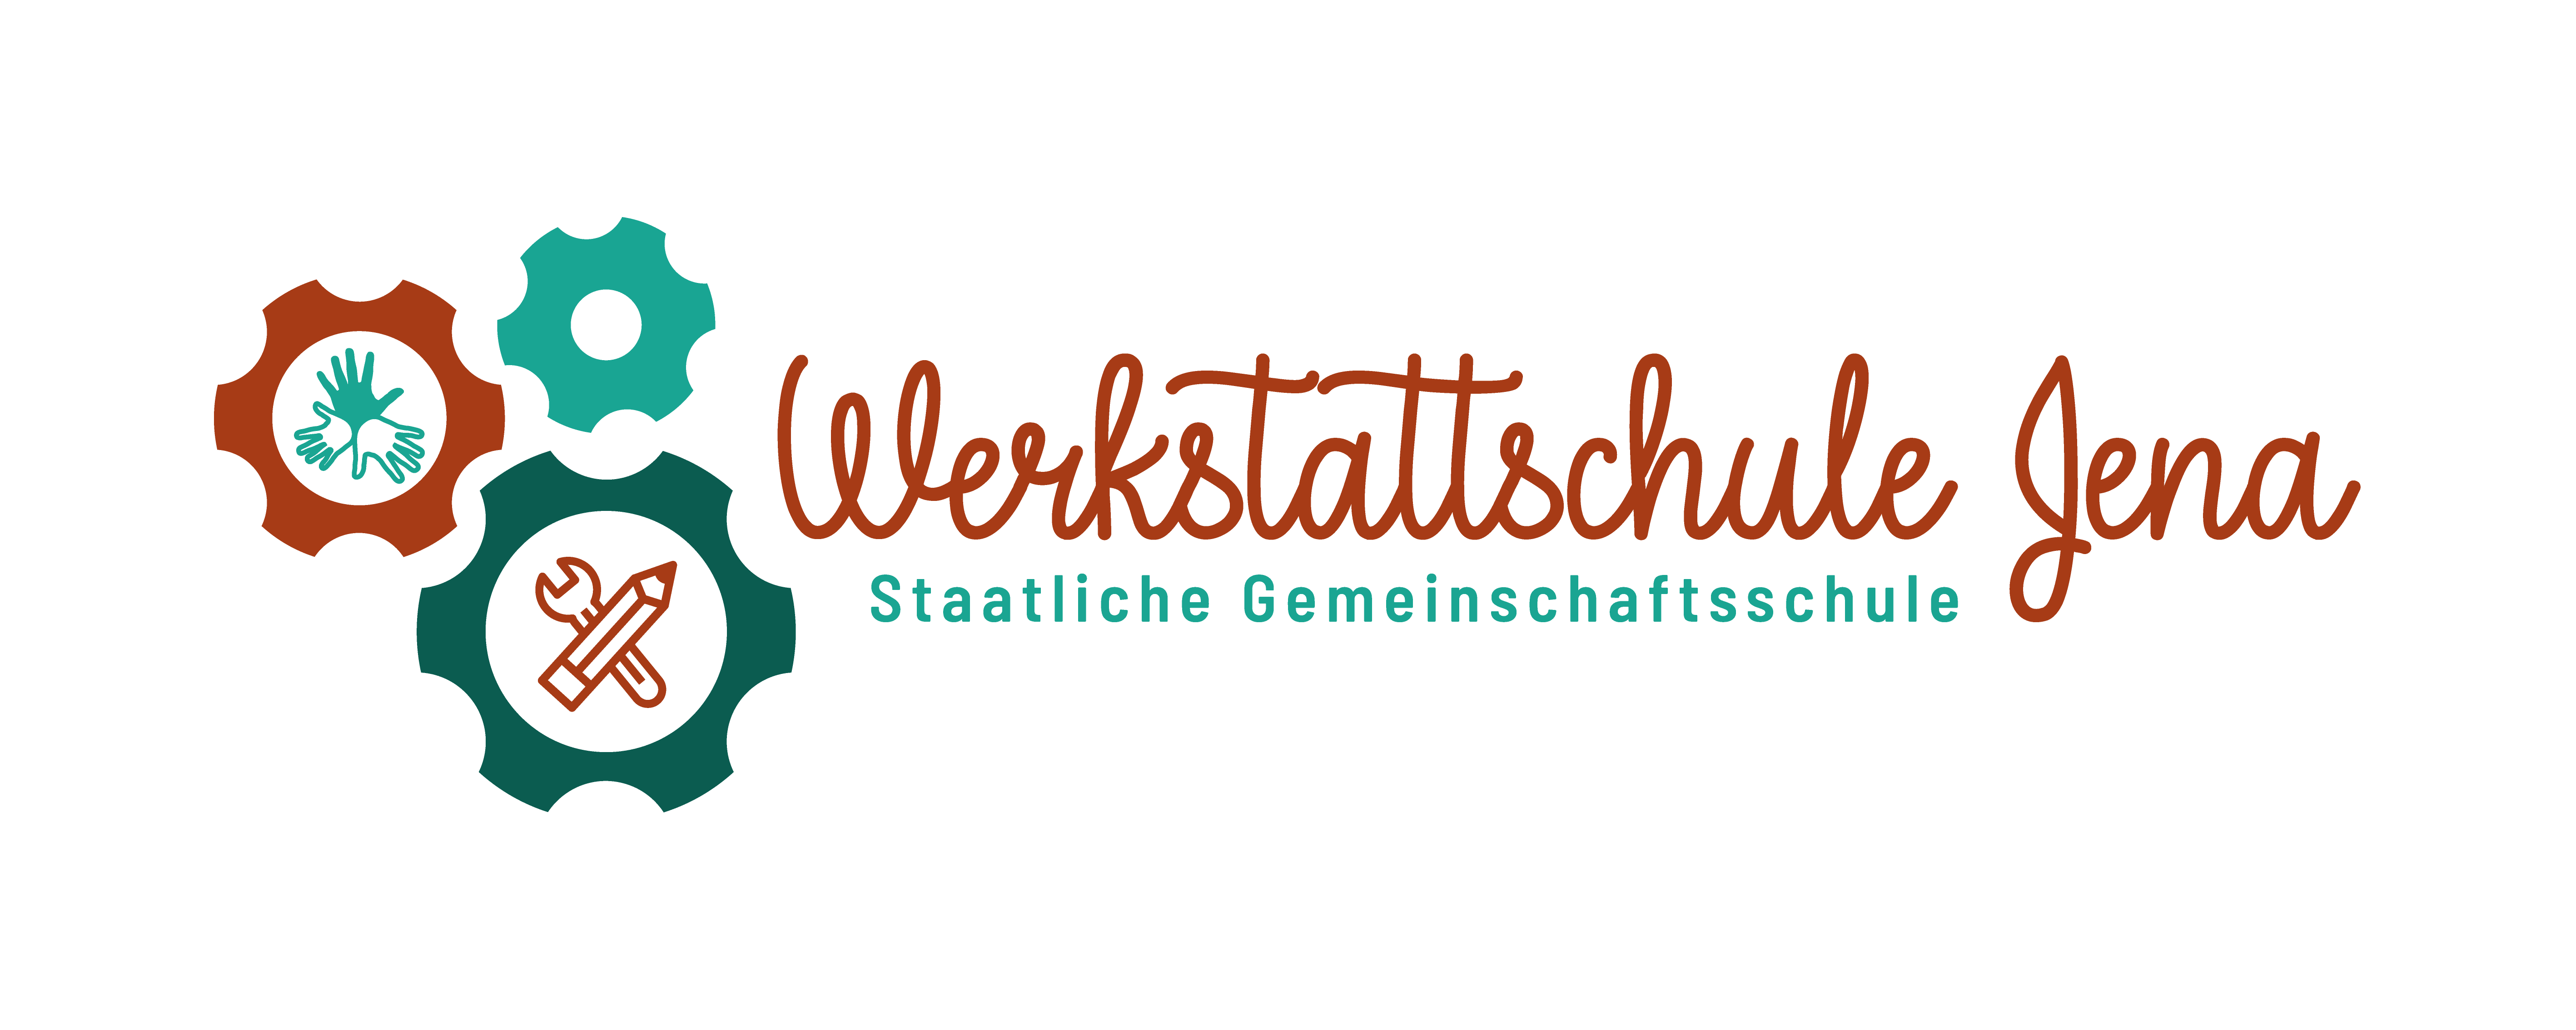 Team | Werkstattschule Jena - Staatliche Gemeinschaftsschule